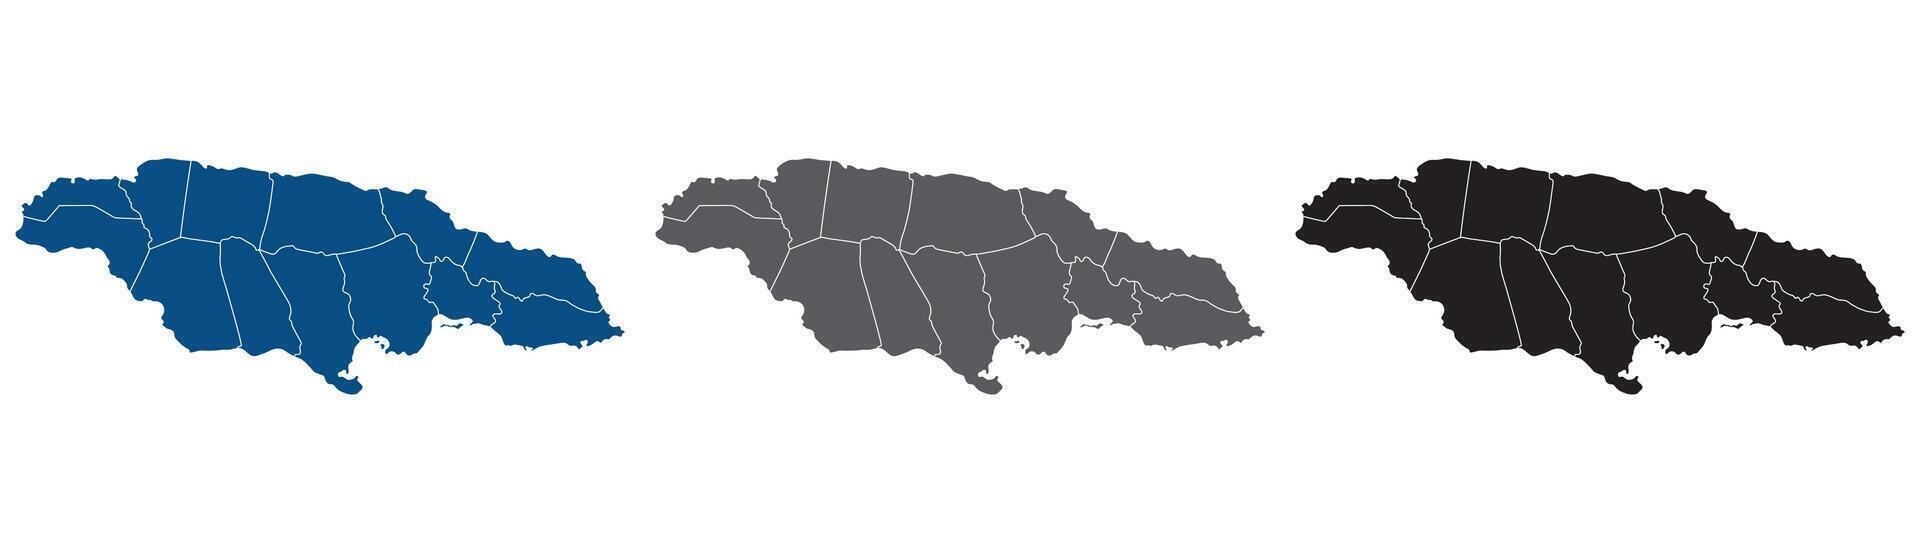 Jamaica mapa. mapa do Jamaica dentro administrativo províncias dentro conjunto vetor